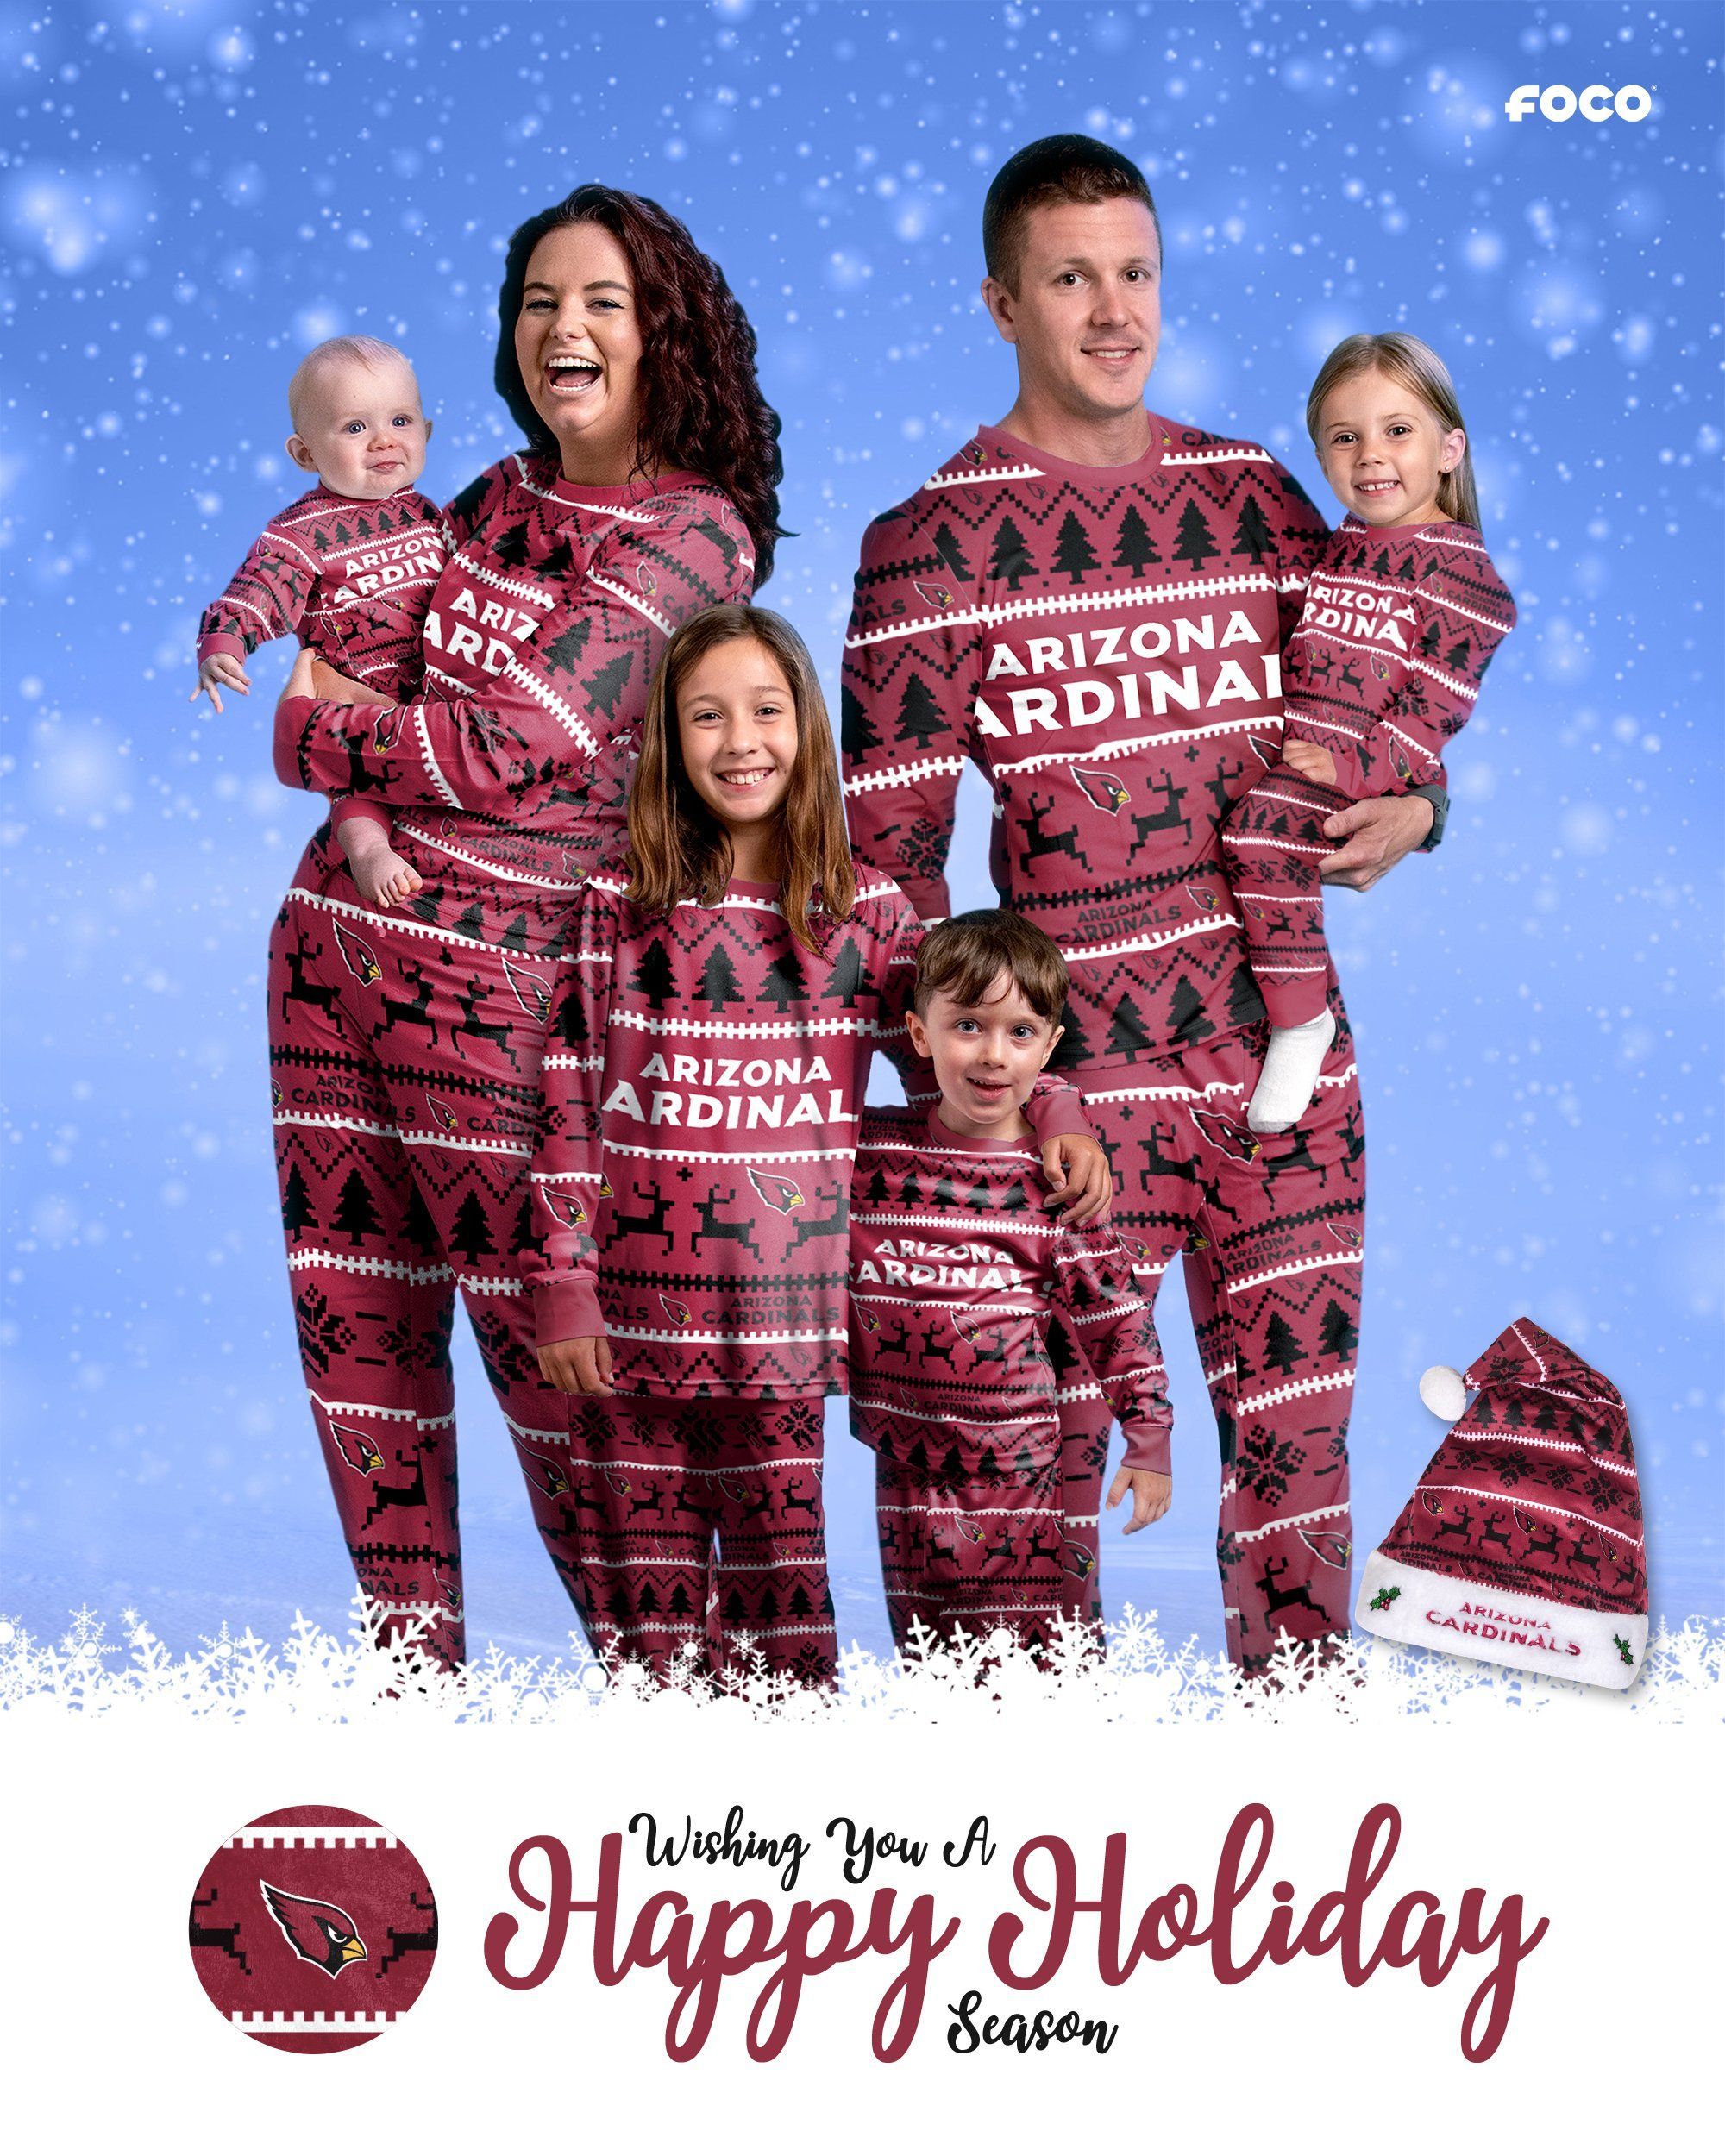 Arizona Cardinals NFL Family Holiday Pajamas -   24 holiday Summer family ideas